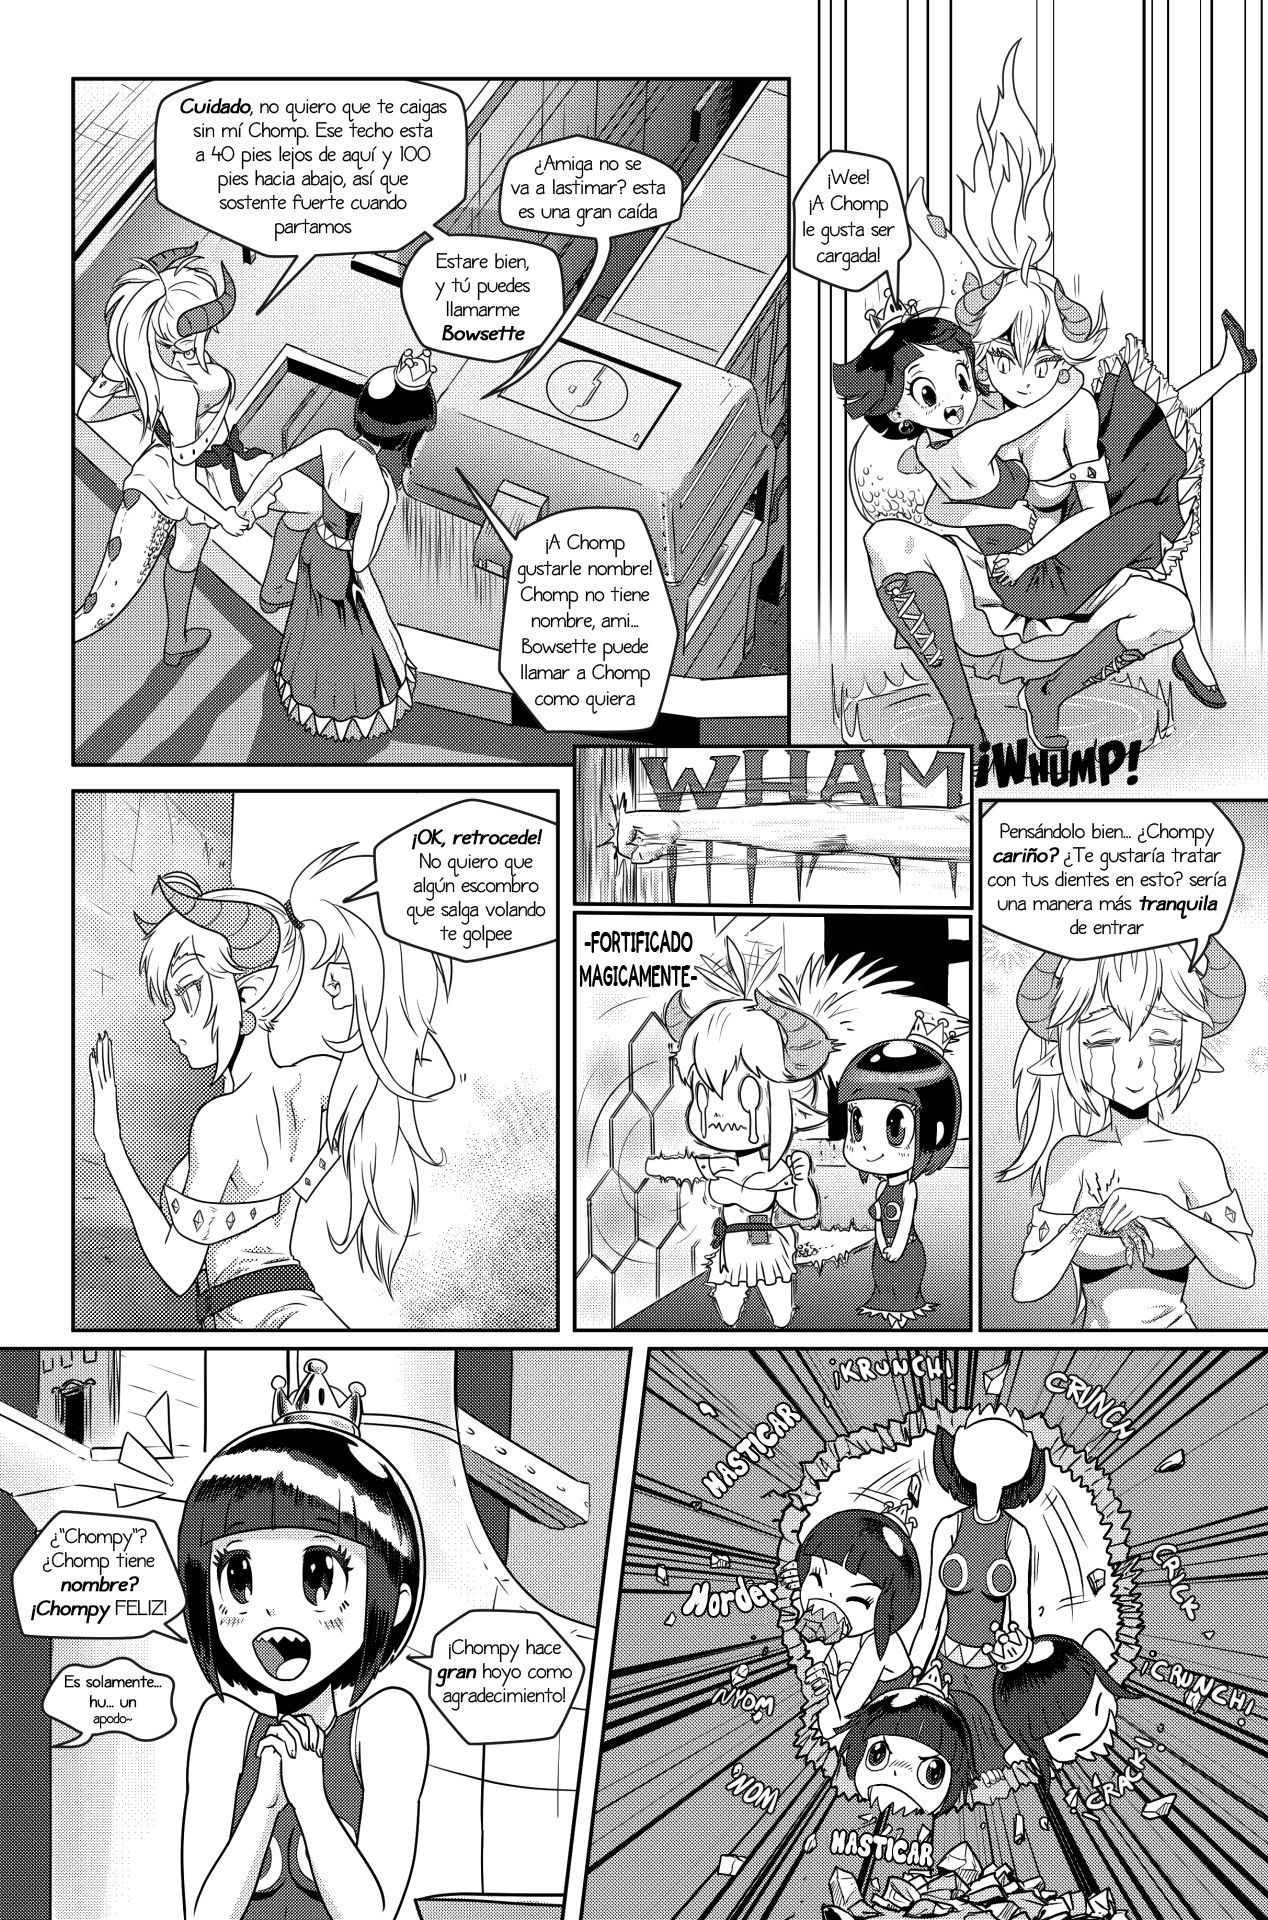 [Pencils] Bowsette Saga Vol.1 Y Vol.2 Completos - Vol.3 En Progreso (Mario Bros.) [Spanish] by Arkoniusx 44